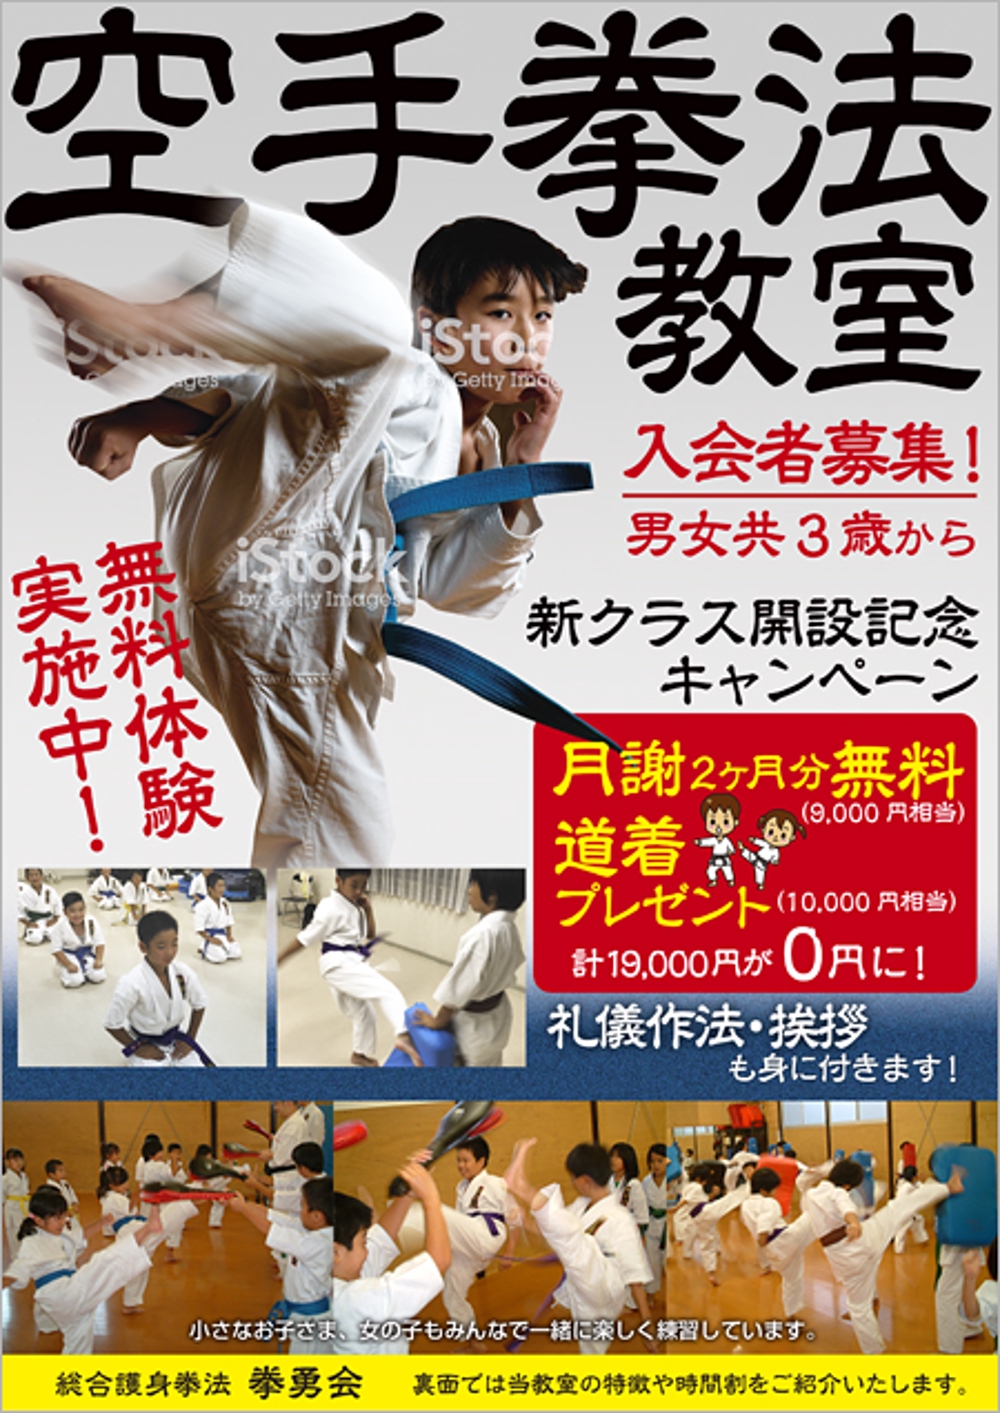 karate-1.jpg